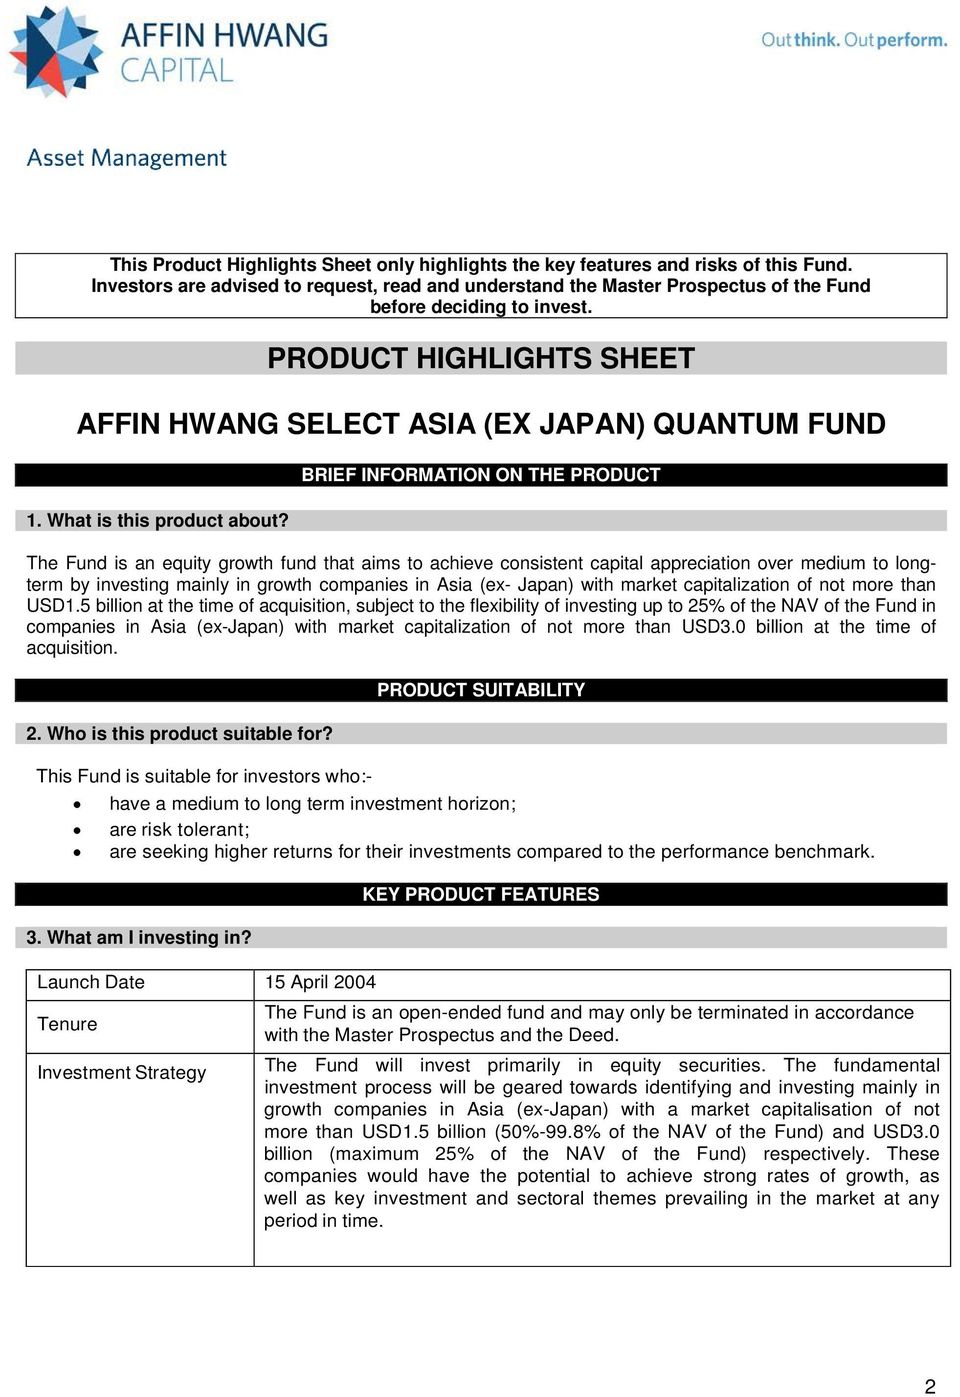 Bond affin hwang fund select